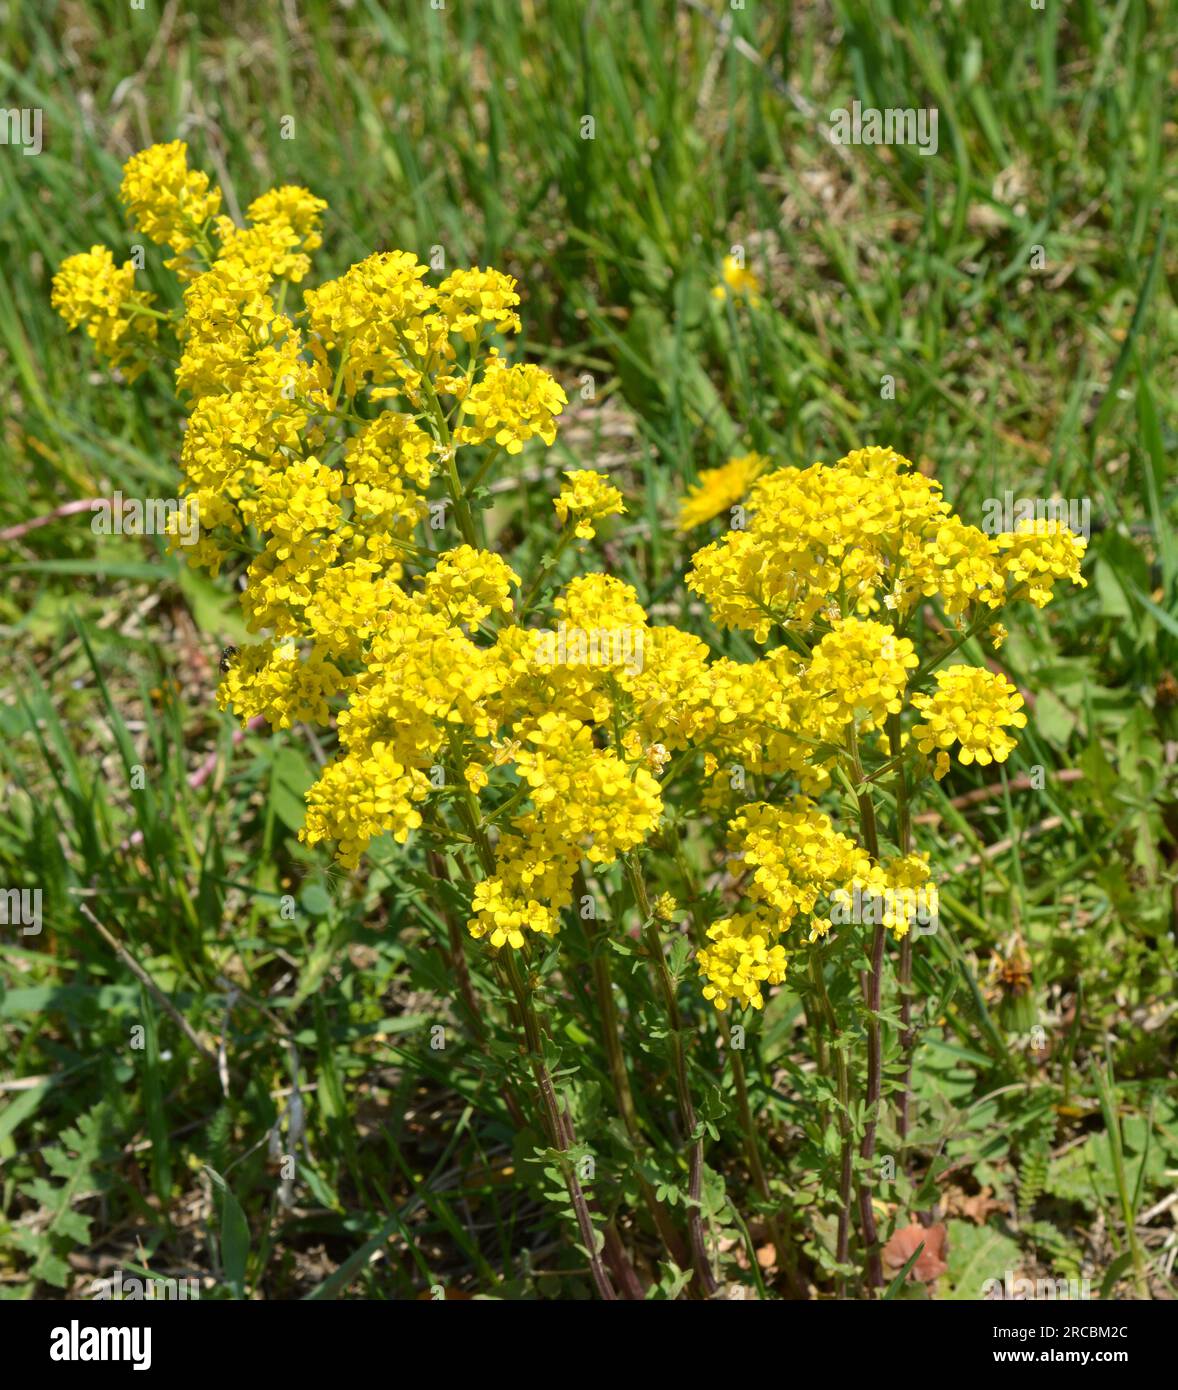 La rapa selvatica (Barbarea vulgaris) fiorisce in natura tra le erbe. Foto Stock